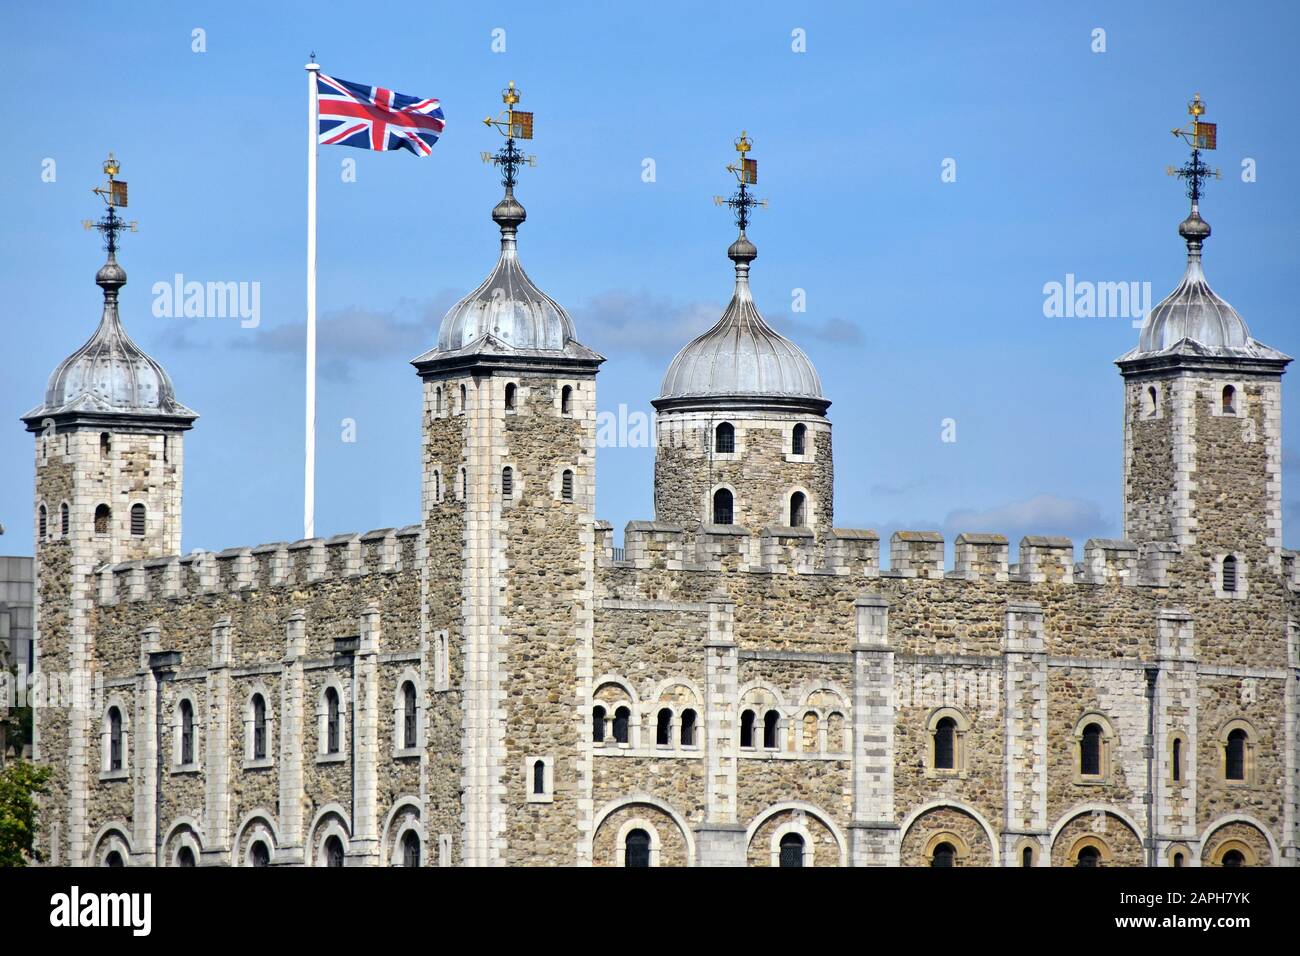 Nahaufnahme der Steinmauer und des Dachturms des berühmten historischen White Tower-Gebäudes im Tower of London Castle Union Jack Flag & Weather Vane England UK Stockfoto